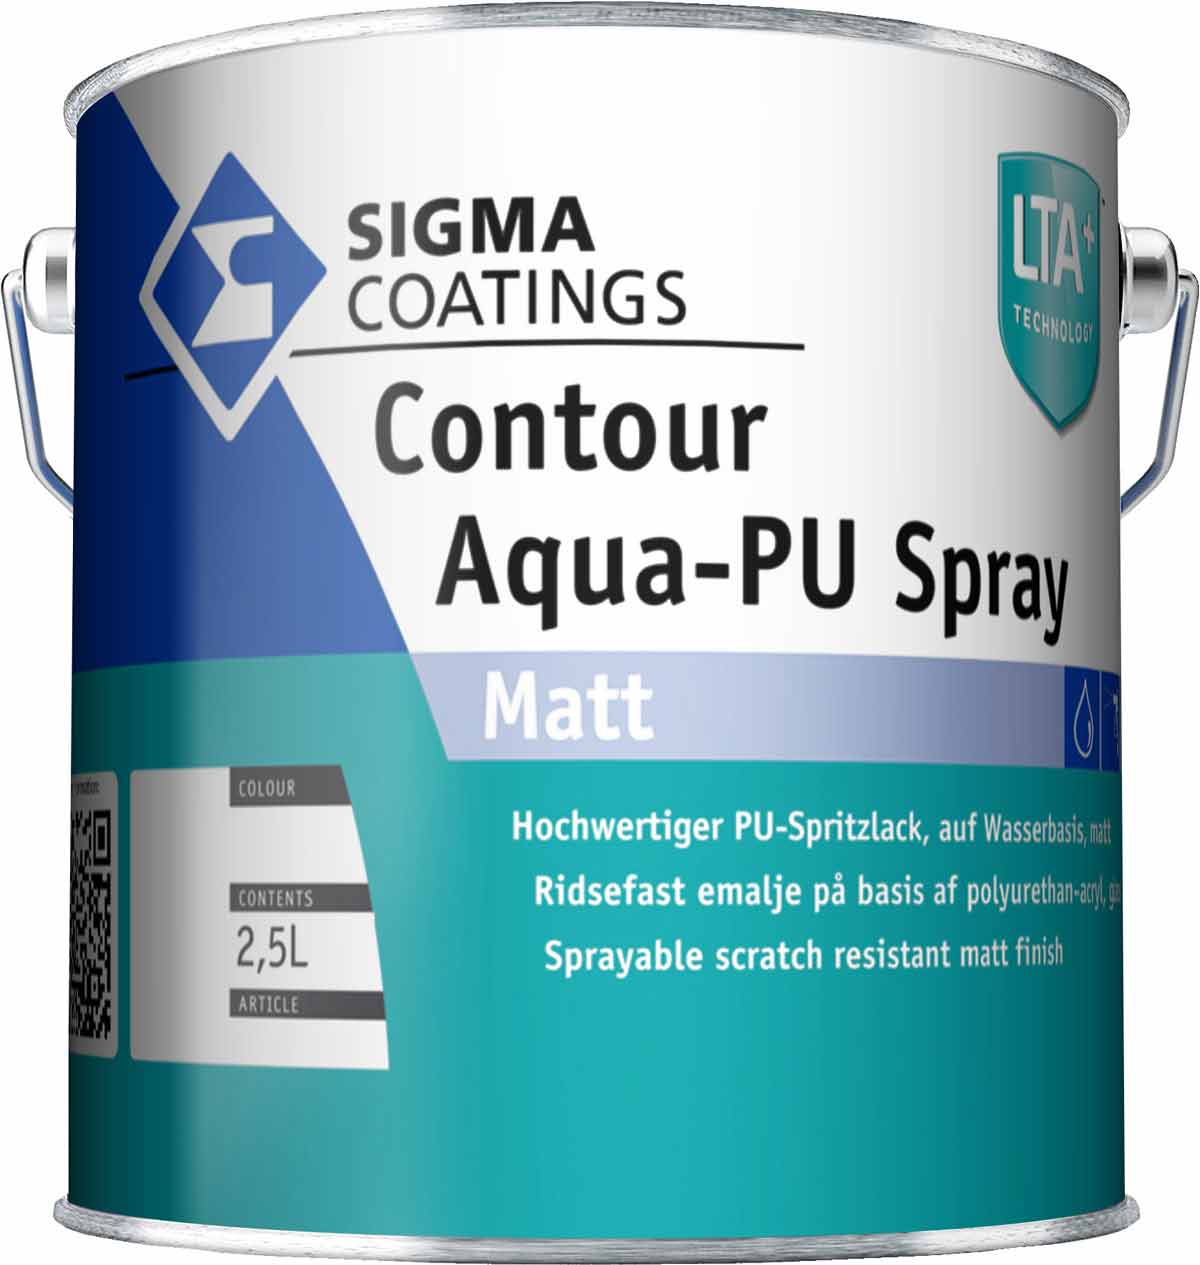 SIGMA Contour Aqua PU Spray Matt - www.onlineshop-baustoffe.de